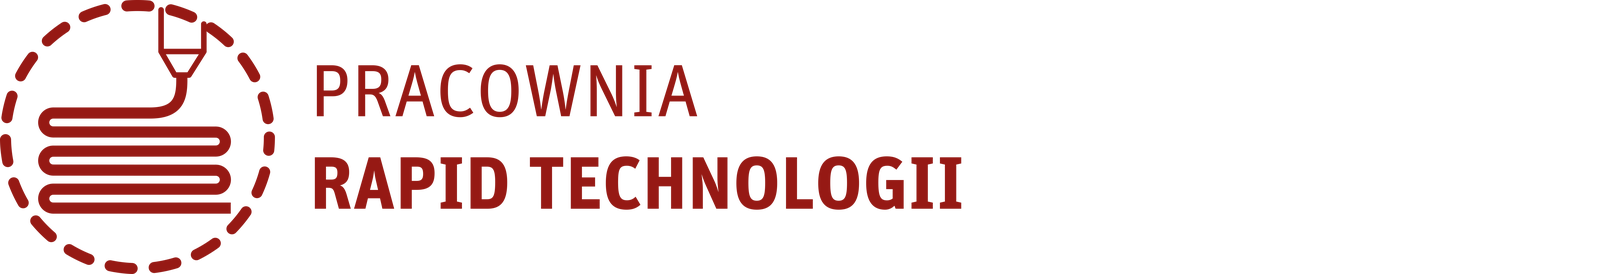 Obrazek przedstawia logo pracowni Rapid Technologii